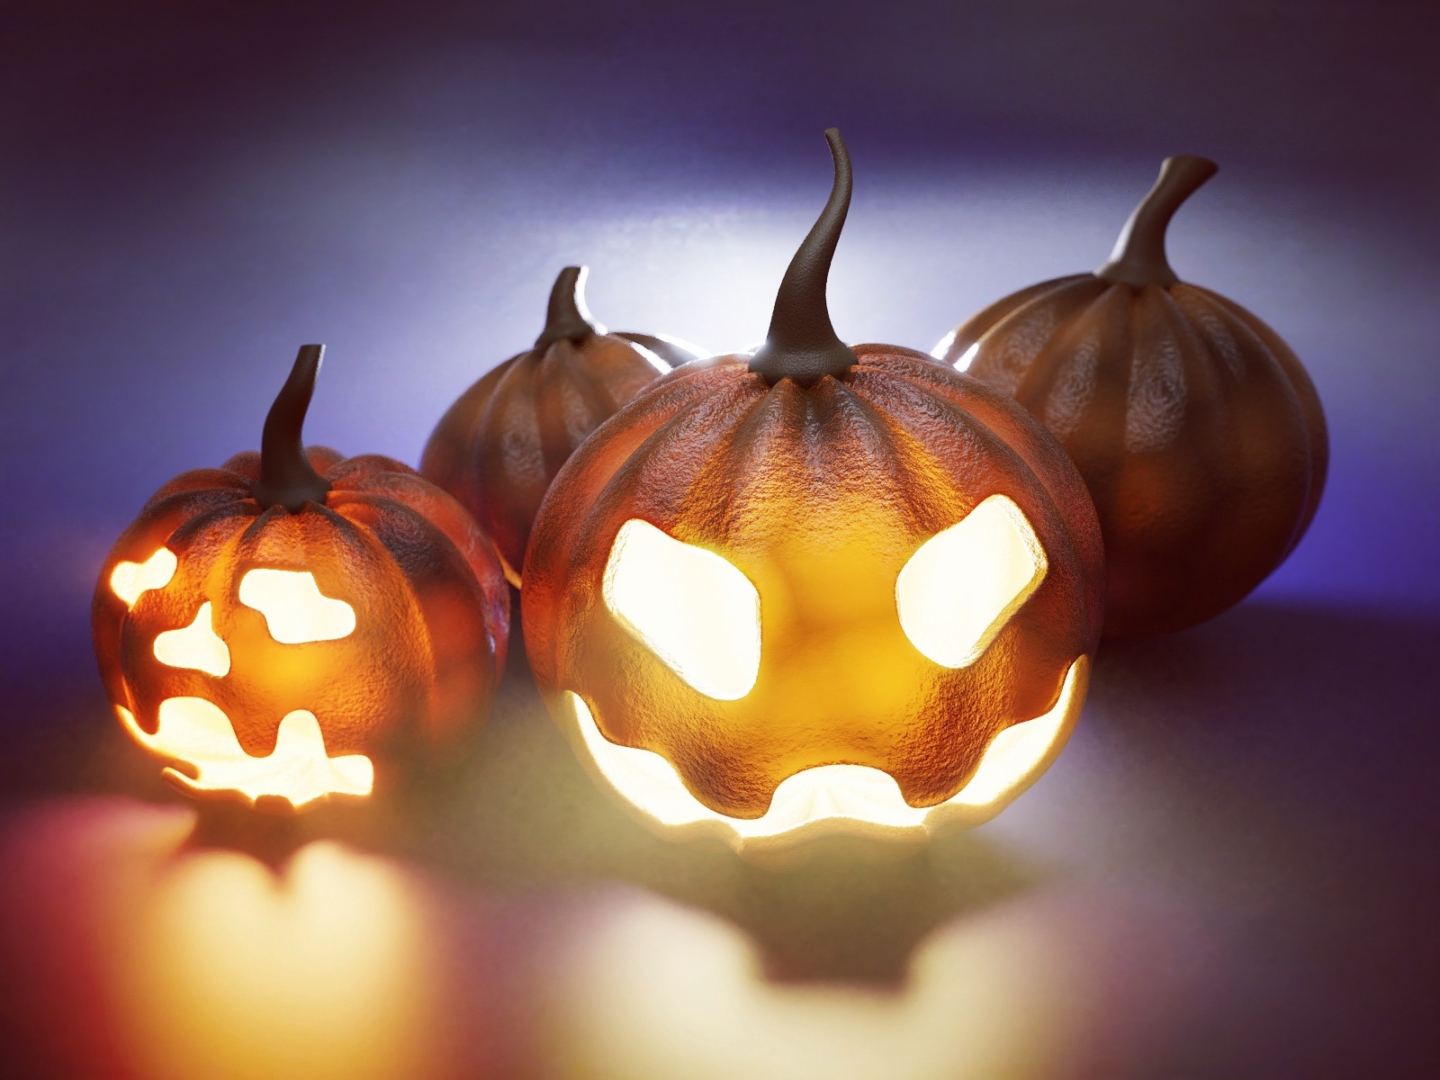 horror-pumpkins